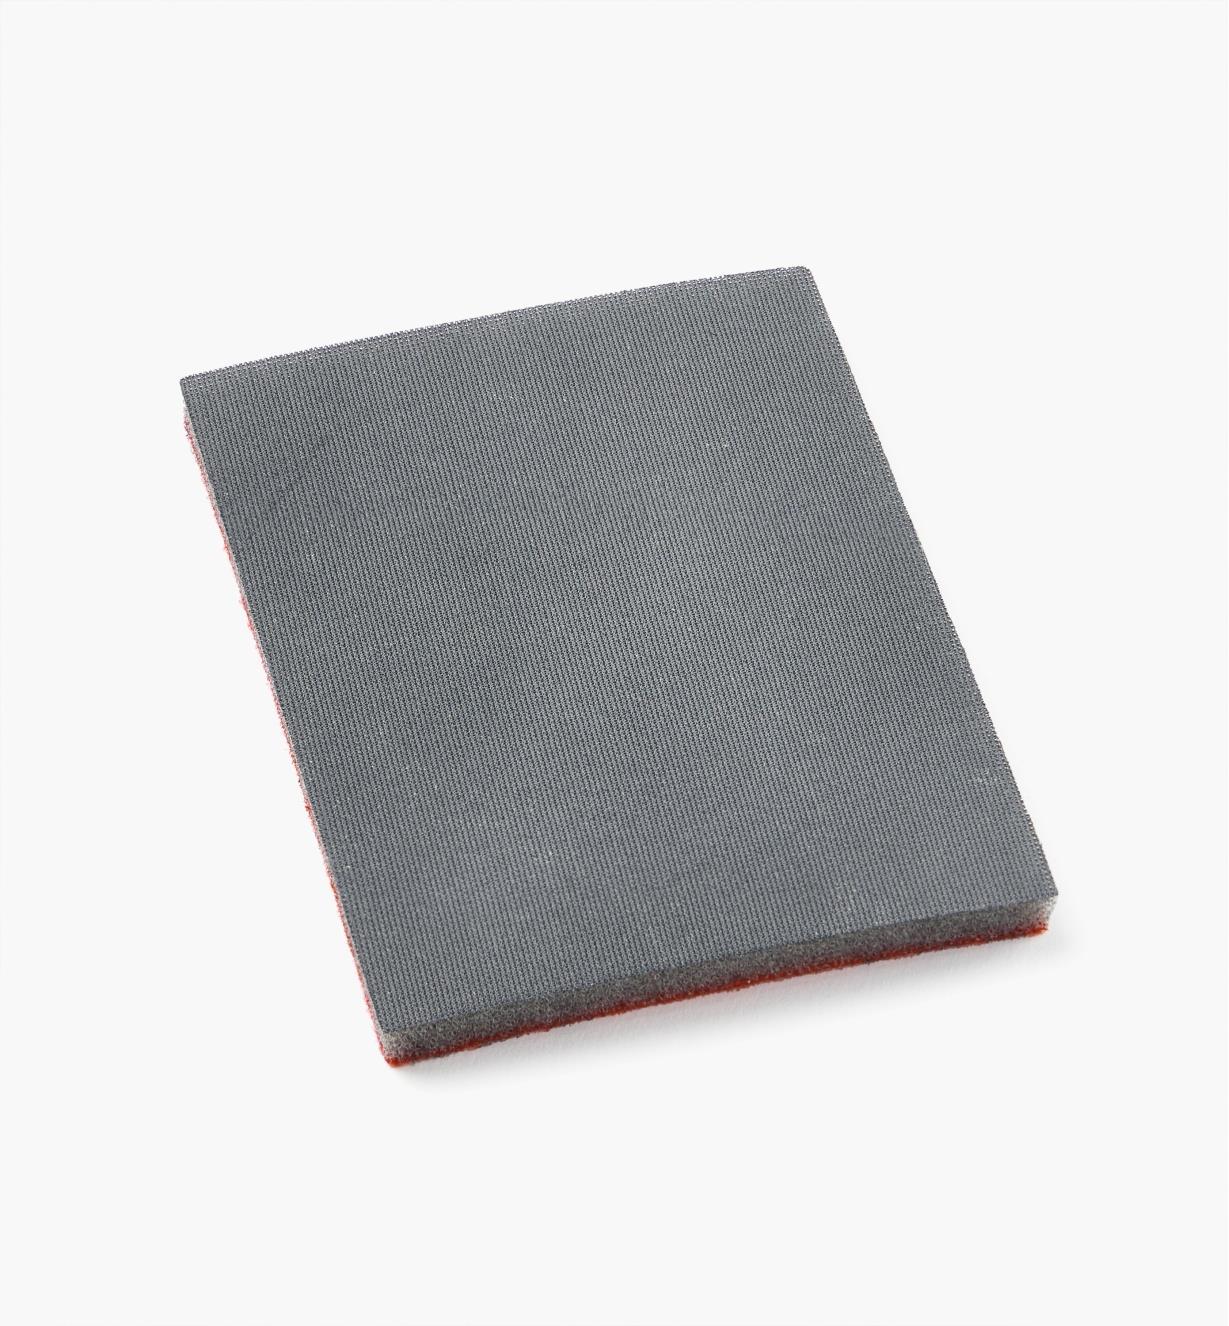 08K3704 - 1000x Abralon Foam Grip Sheet, 3" × 4", ea.